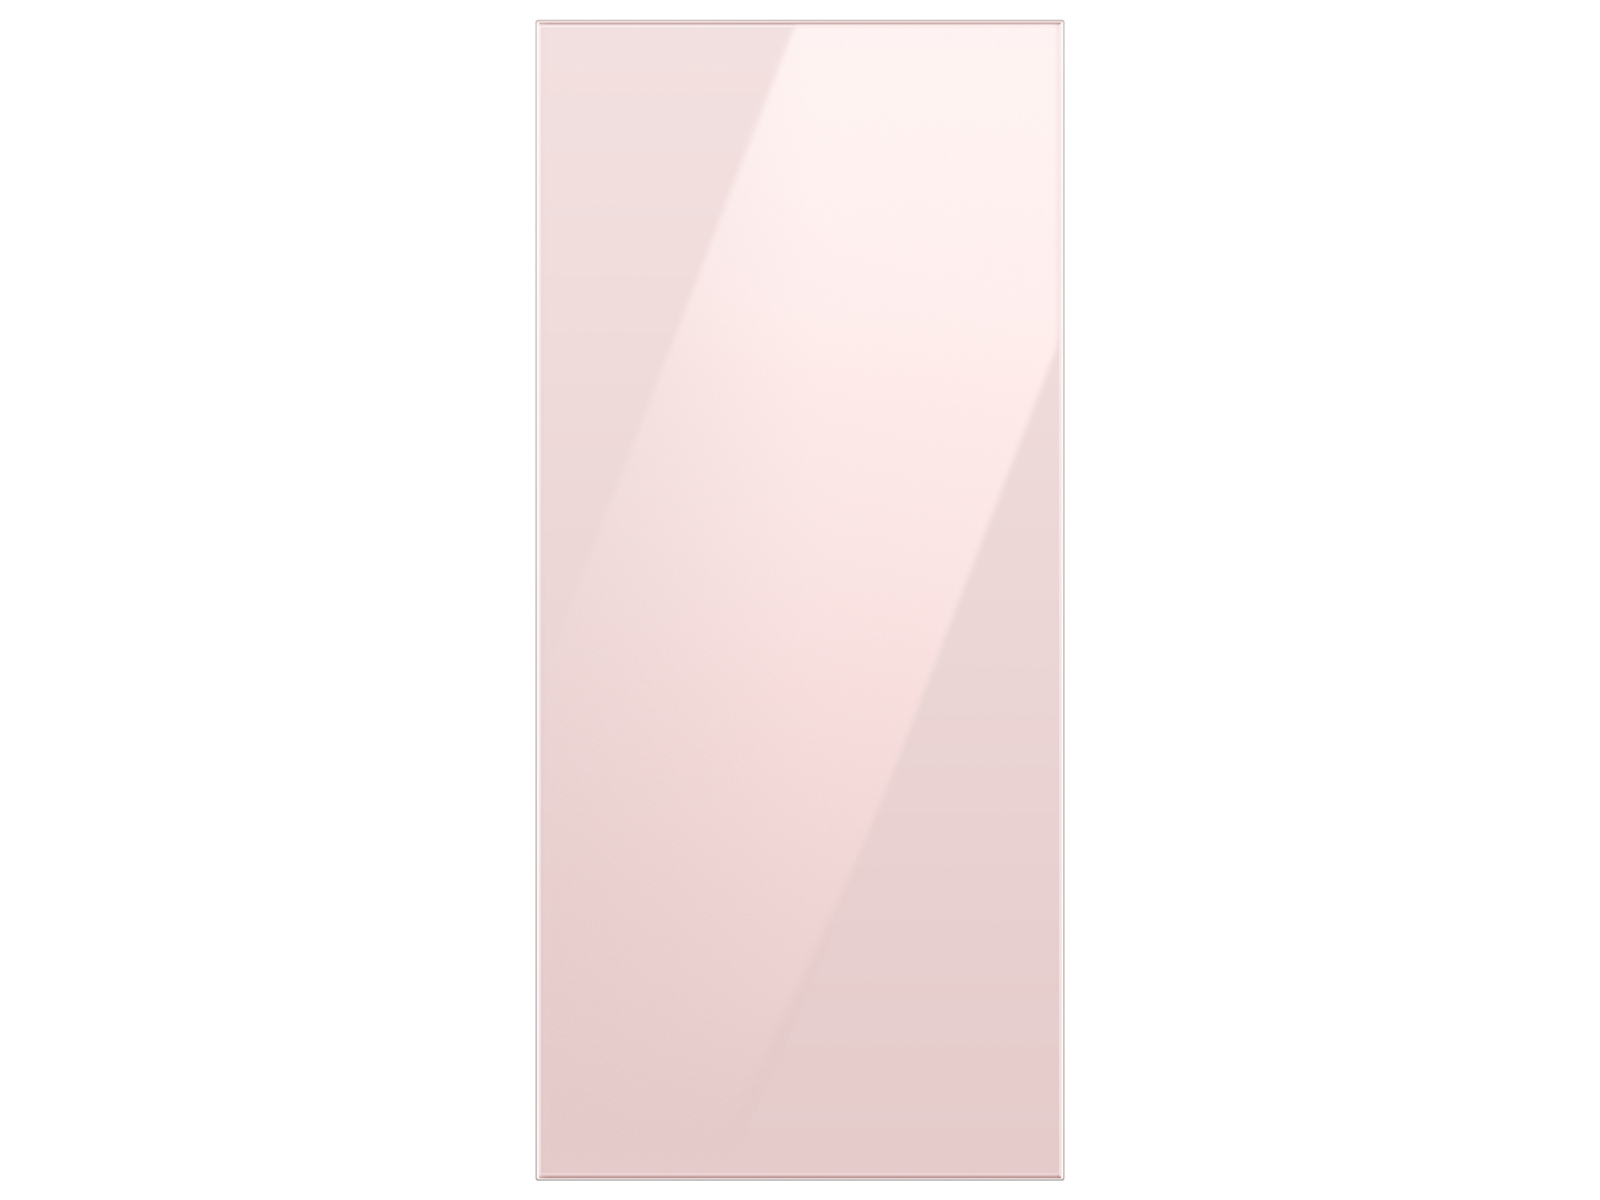 Photos - Fridge Samsung Bespoke 4-Door Flex™ Refrigerator Panel in Pink Glass - Top Panel( 